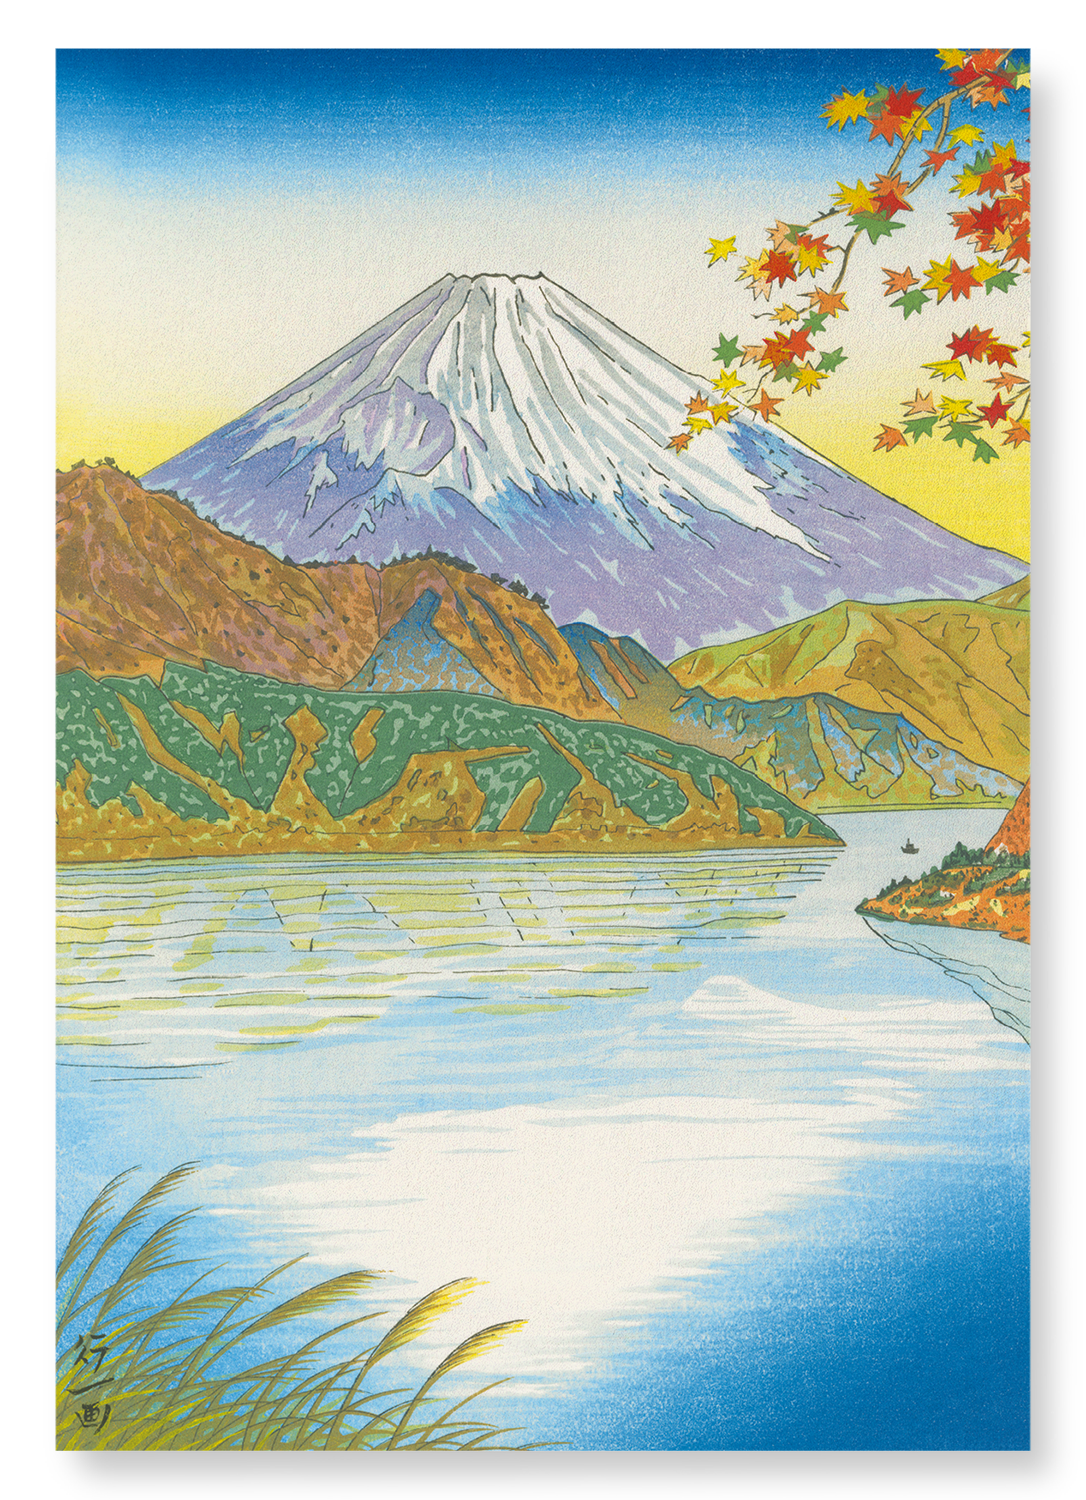 MOUNT FUJI AND LAKE ASHI: Japanese Art Print